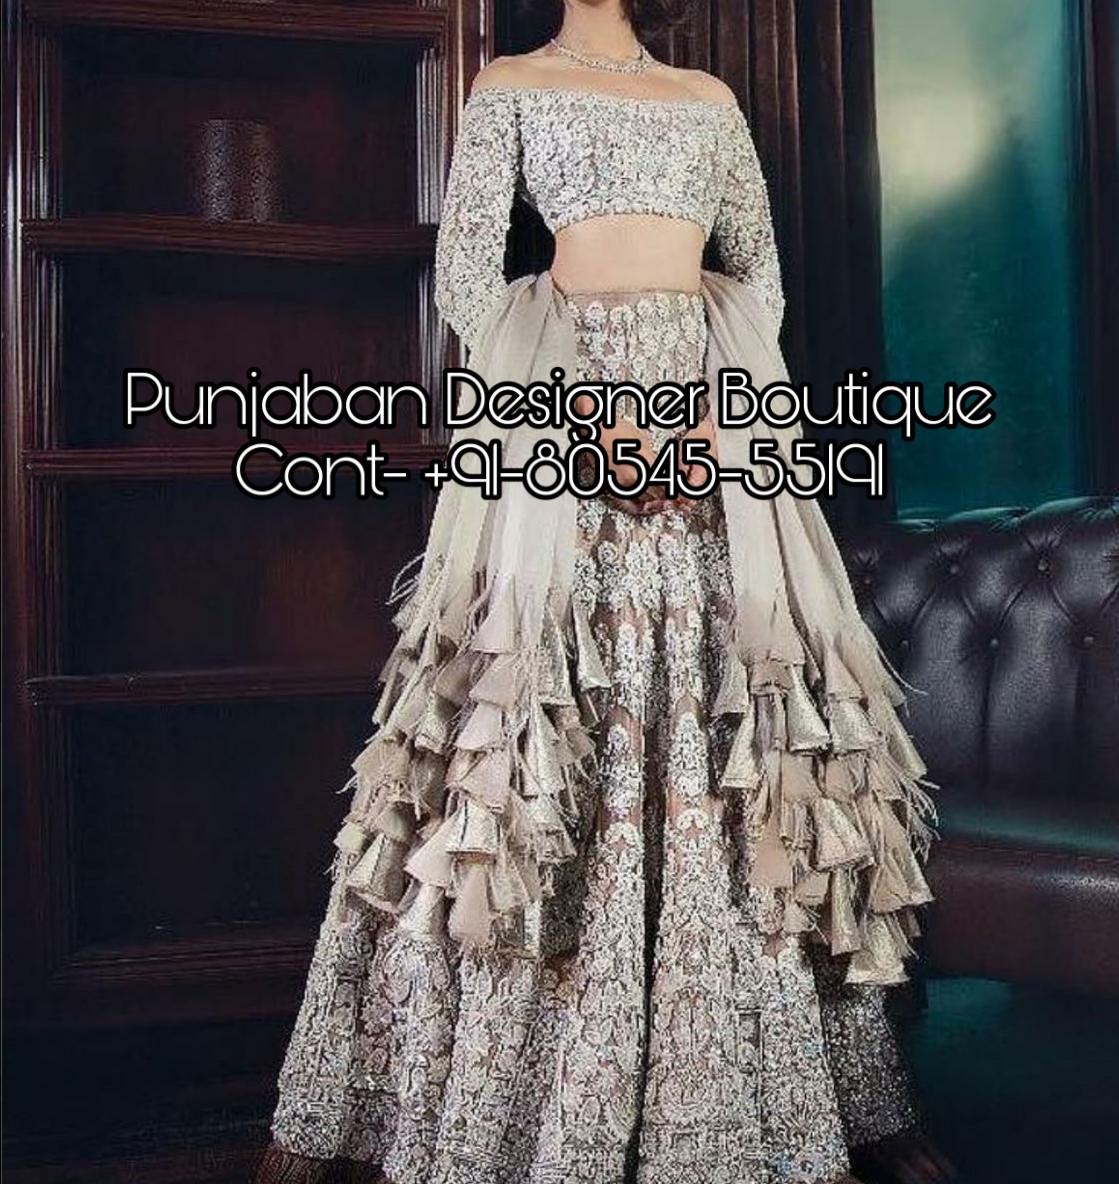 New Wedding Gown Bollywood Designer Bridal Black Dresses Beautiful Western  Tunic | eBay